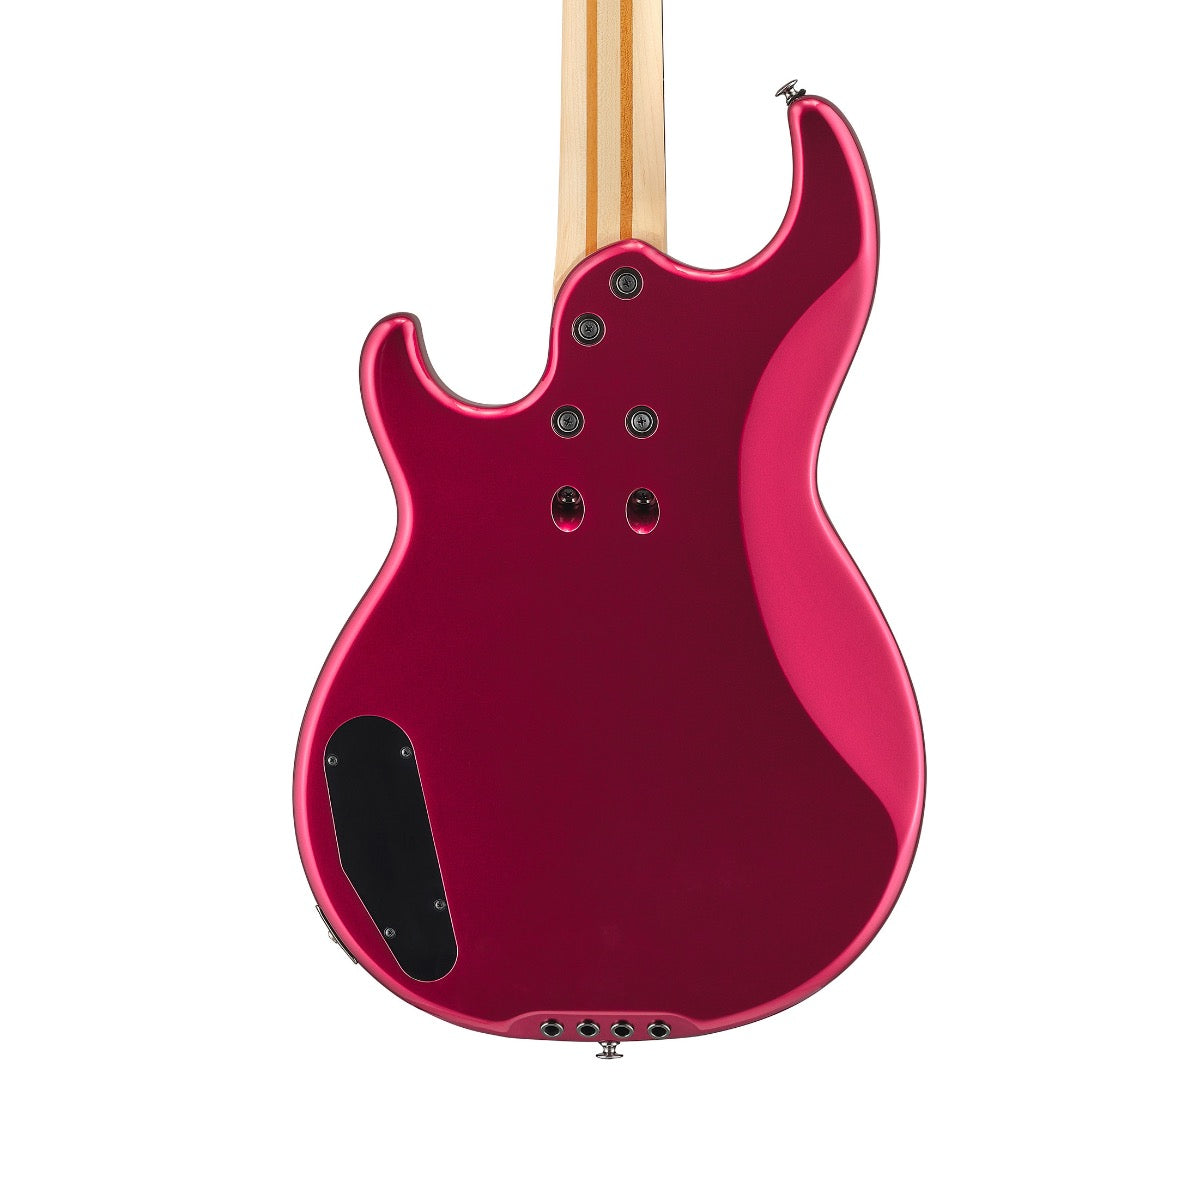 Yamaha BB434 Electric Bass Guitar - Red Metallic, View 3